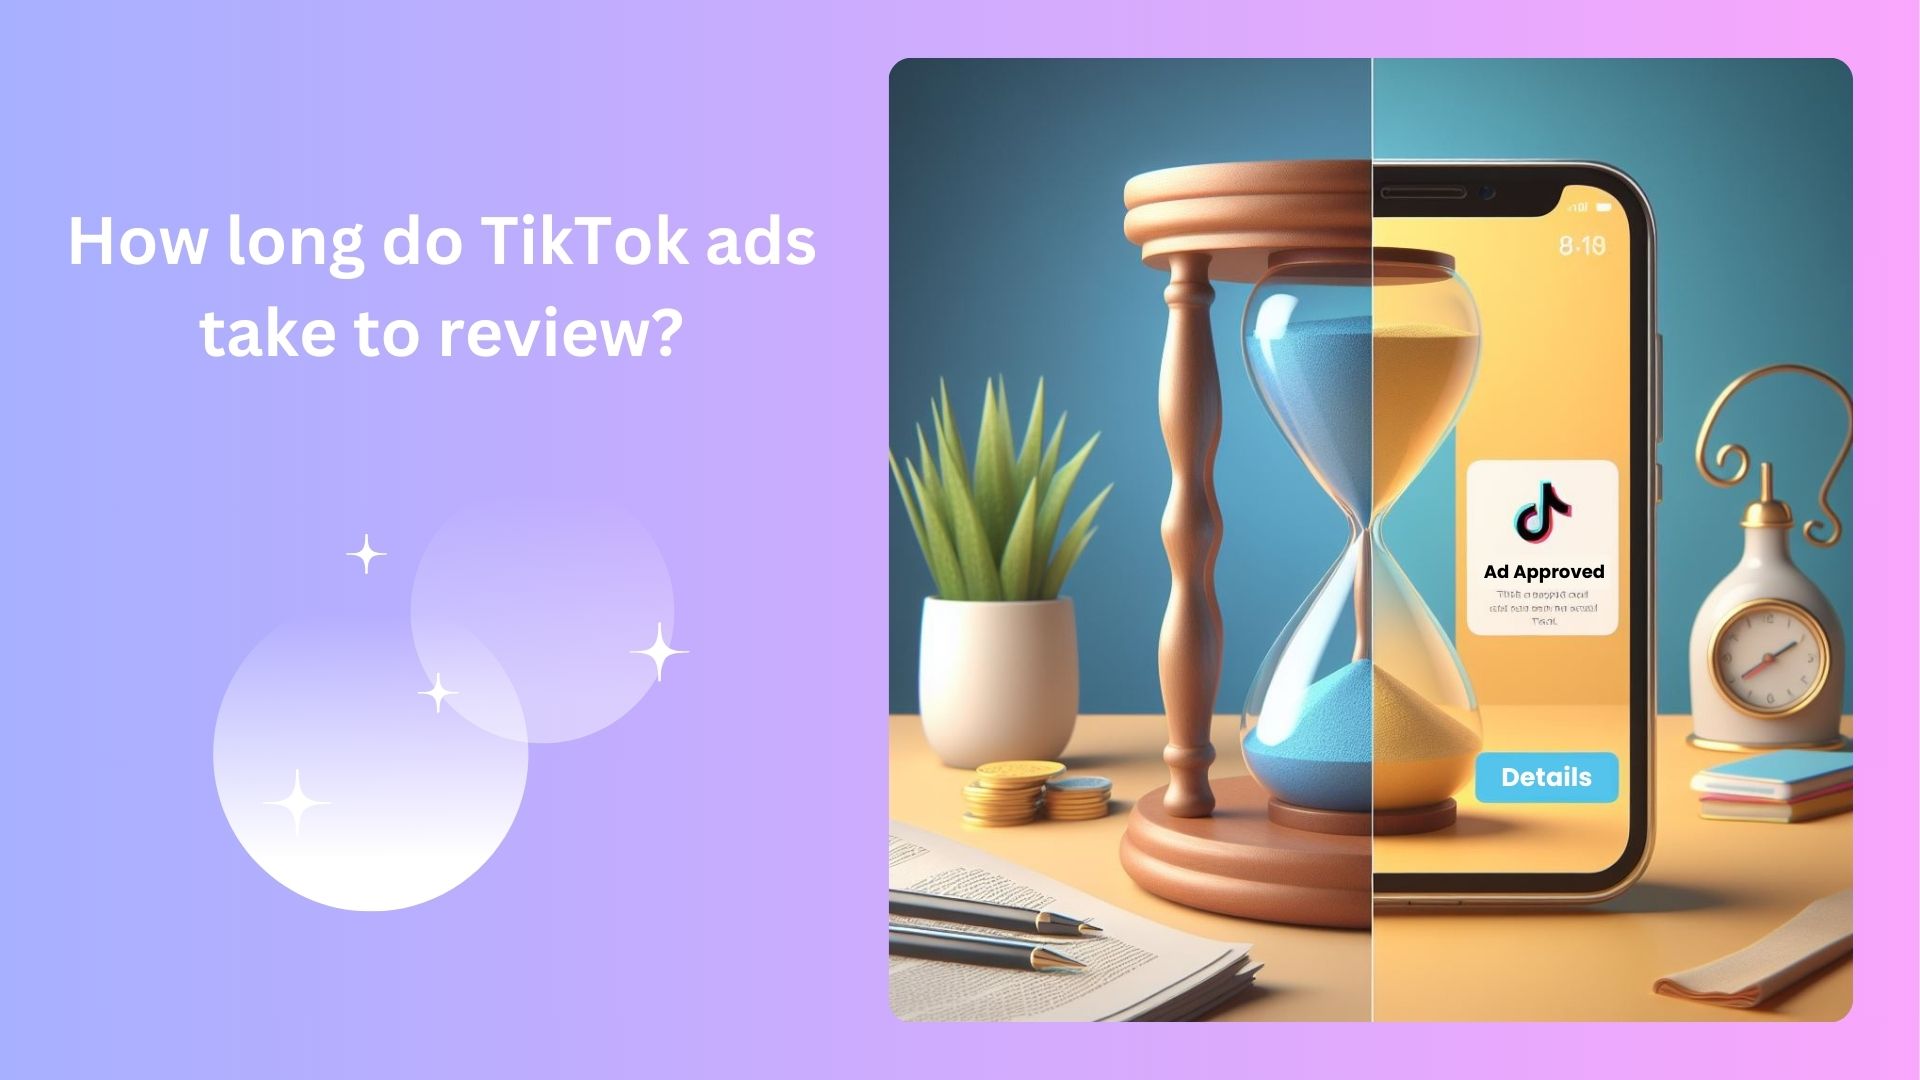 How long do TikTok ads take to review?